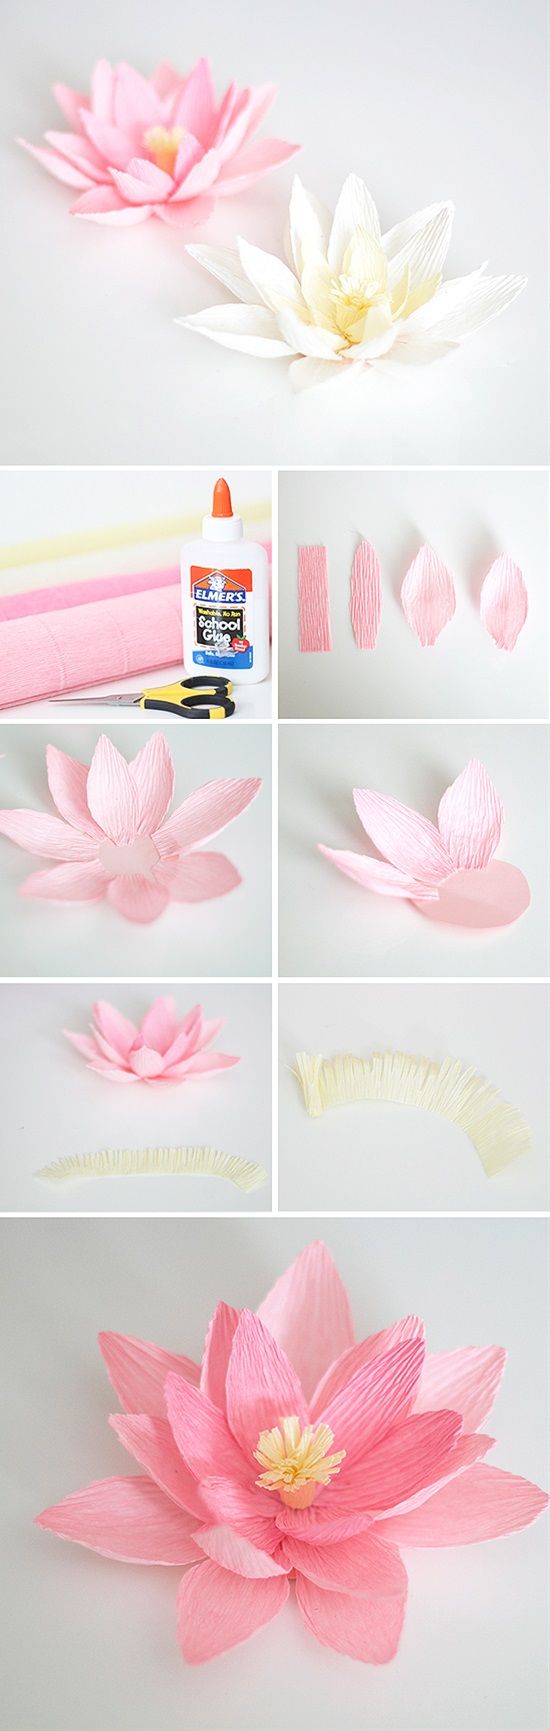 comment faire des fleurs en papier crépon, idée deco recup tutoriel, bricolage facile et rapide